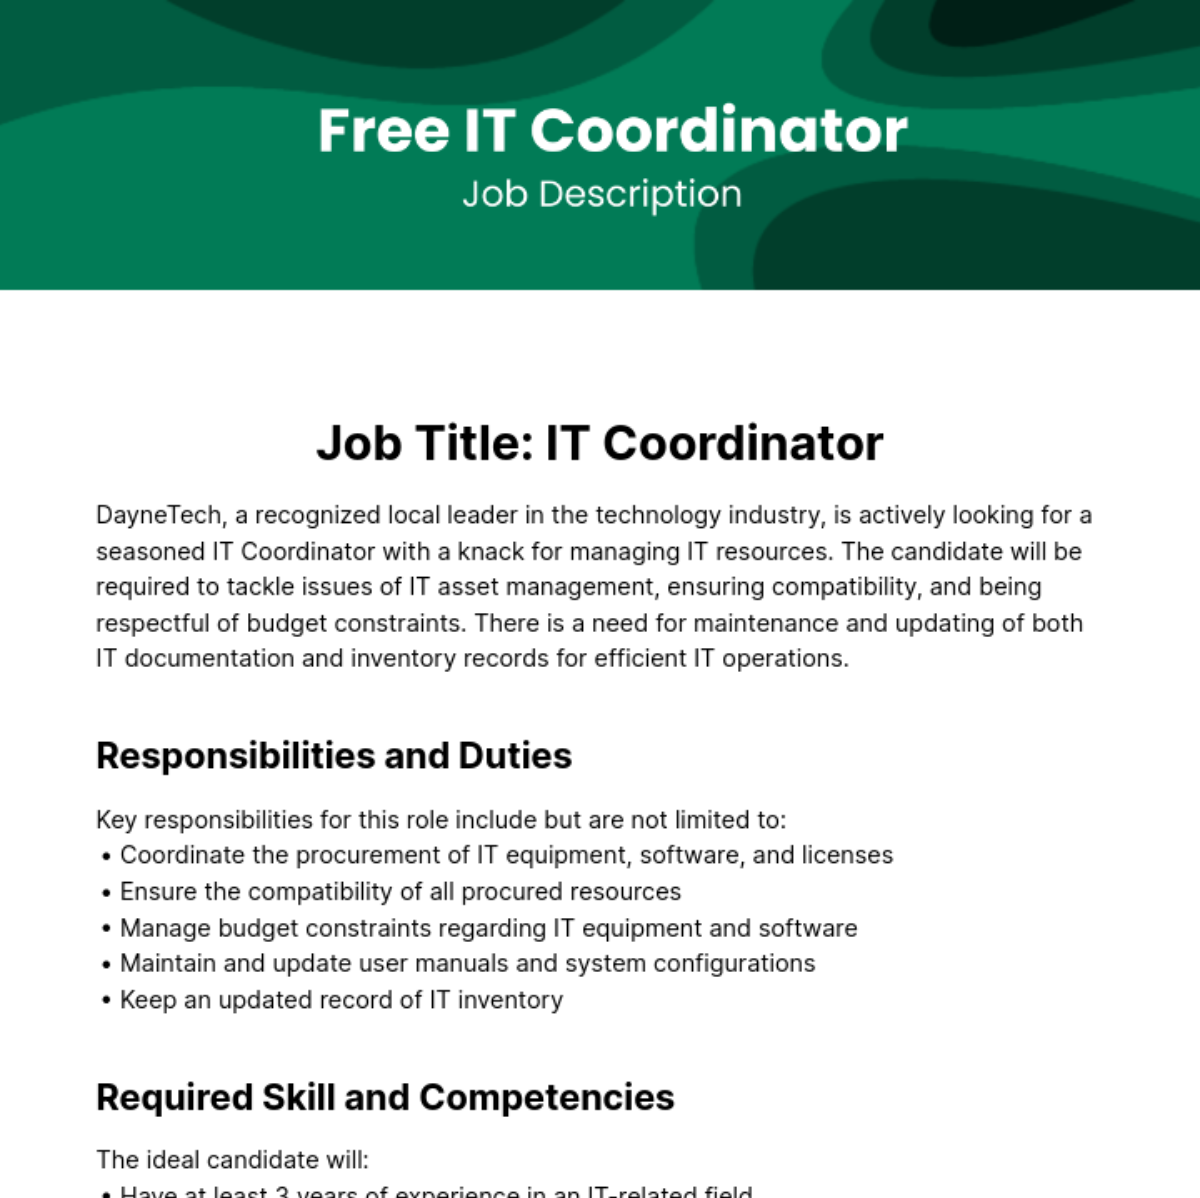 Free IT Coordinator Job Description Template